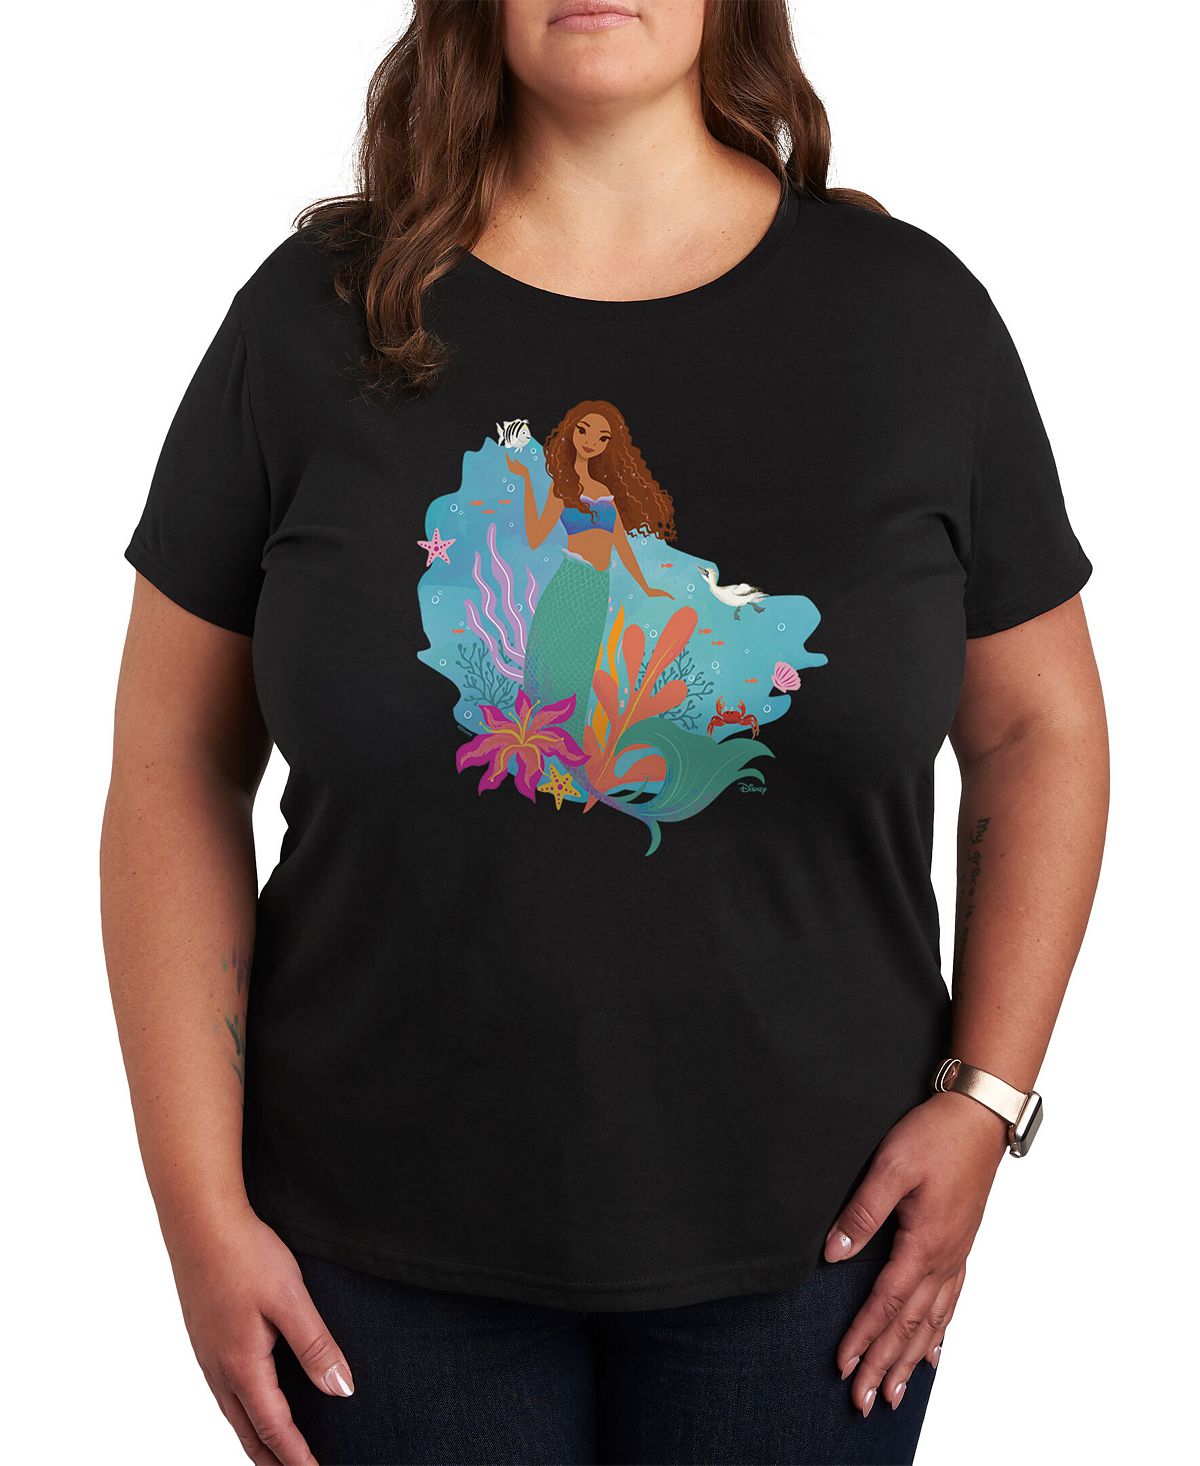 Модная футболка больших размеров с рисунком «Русалочка Ариэль» Air Waves, черный фотографии